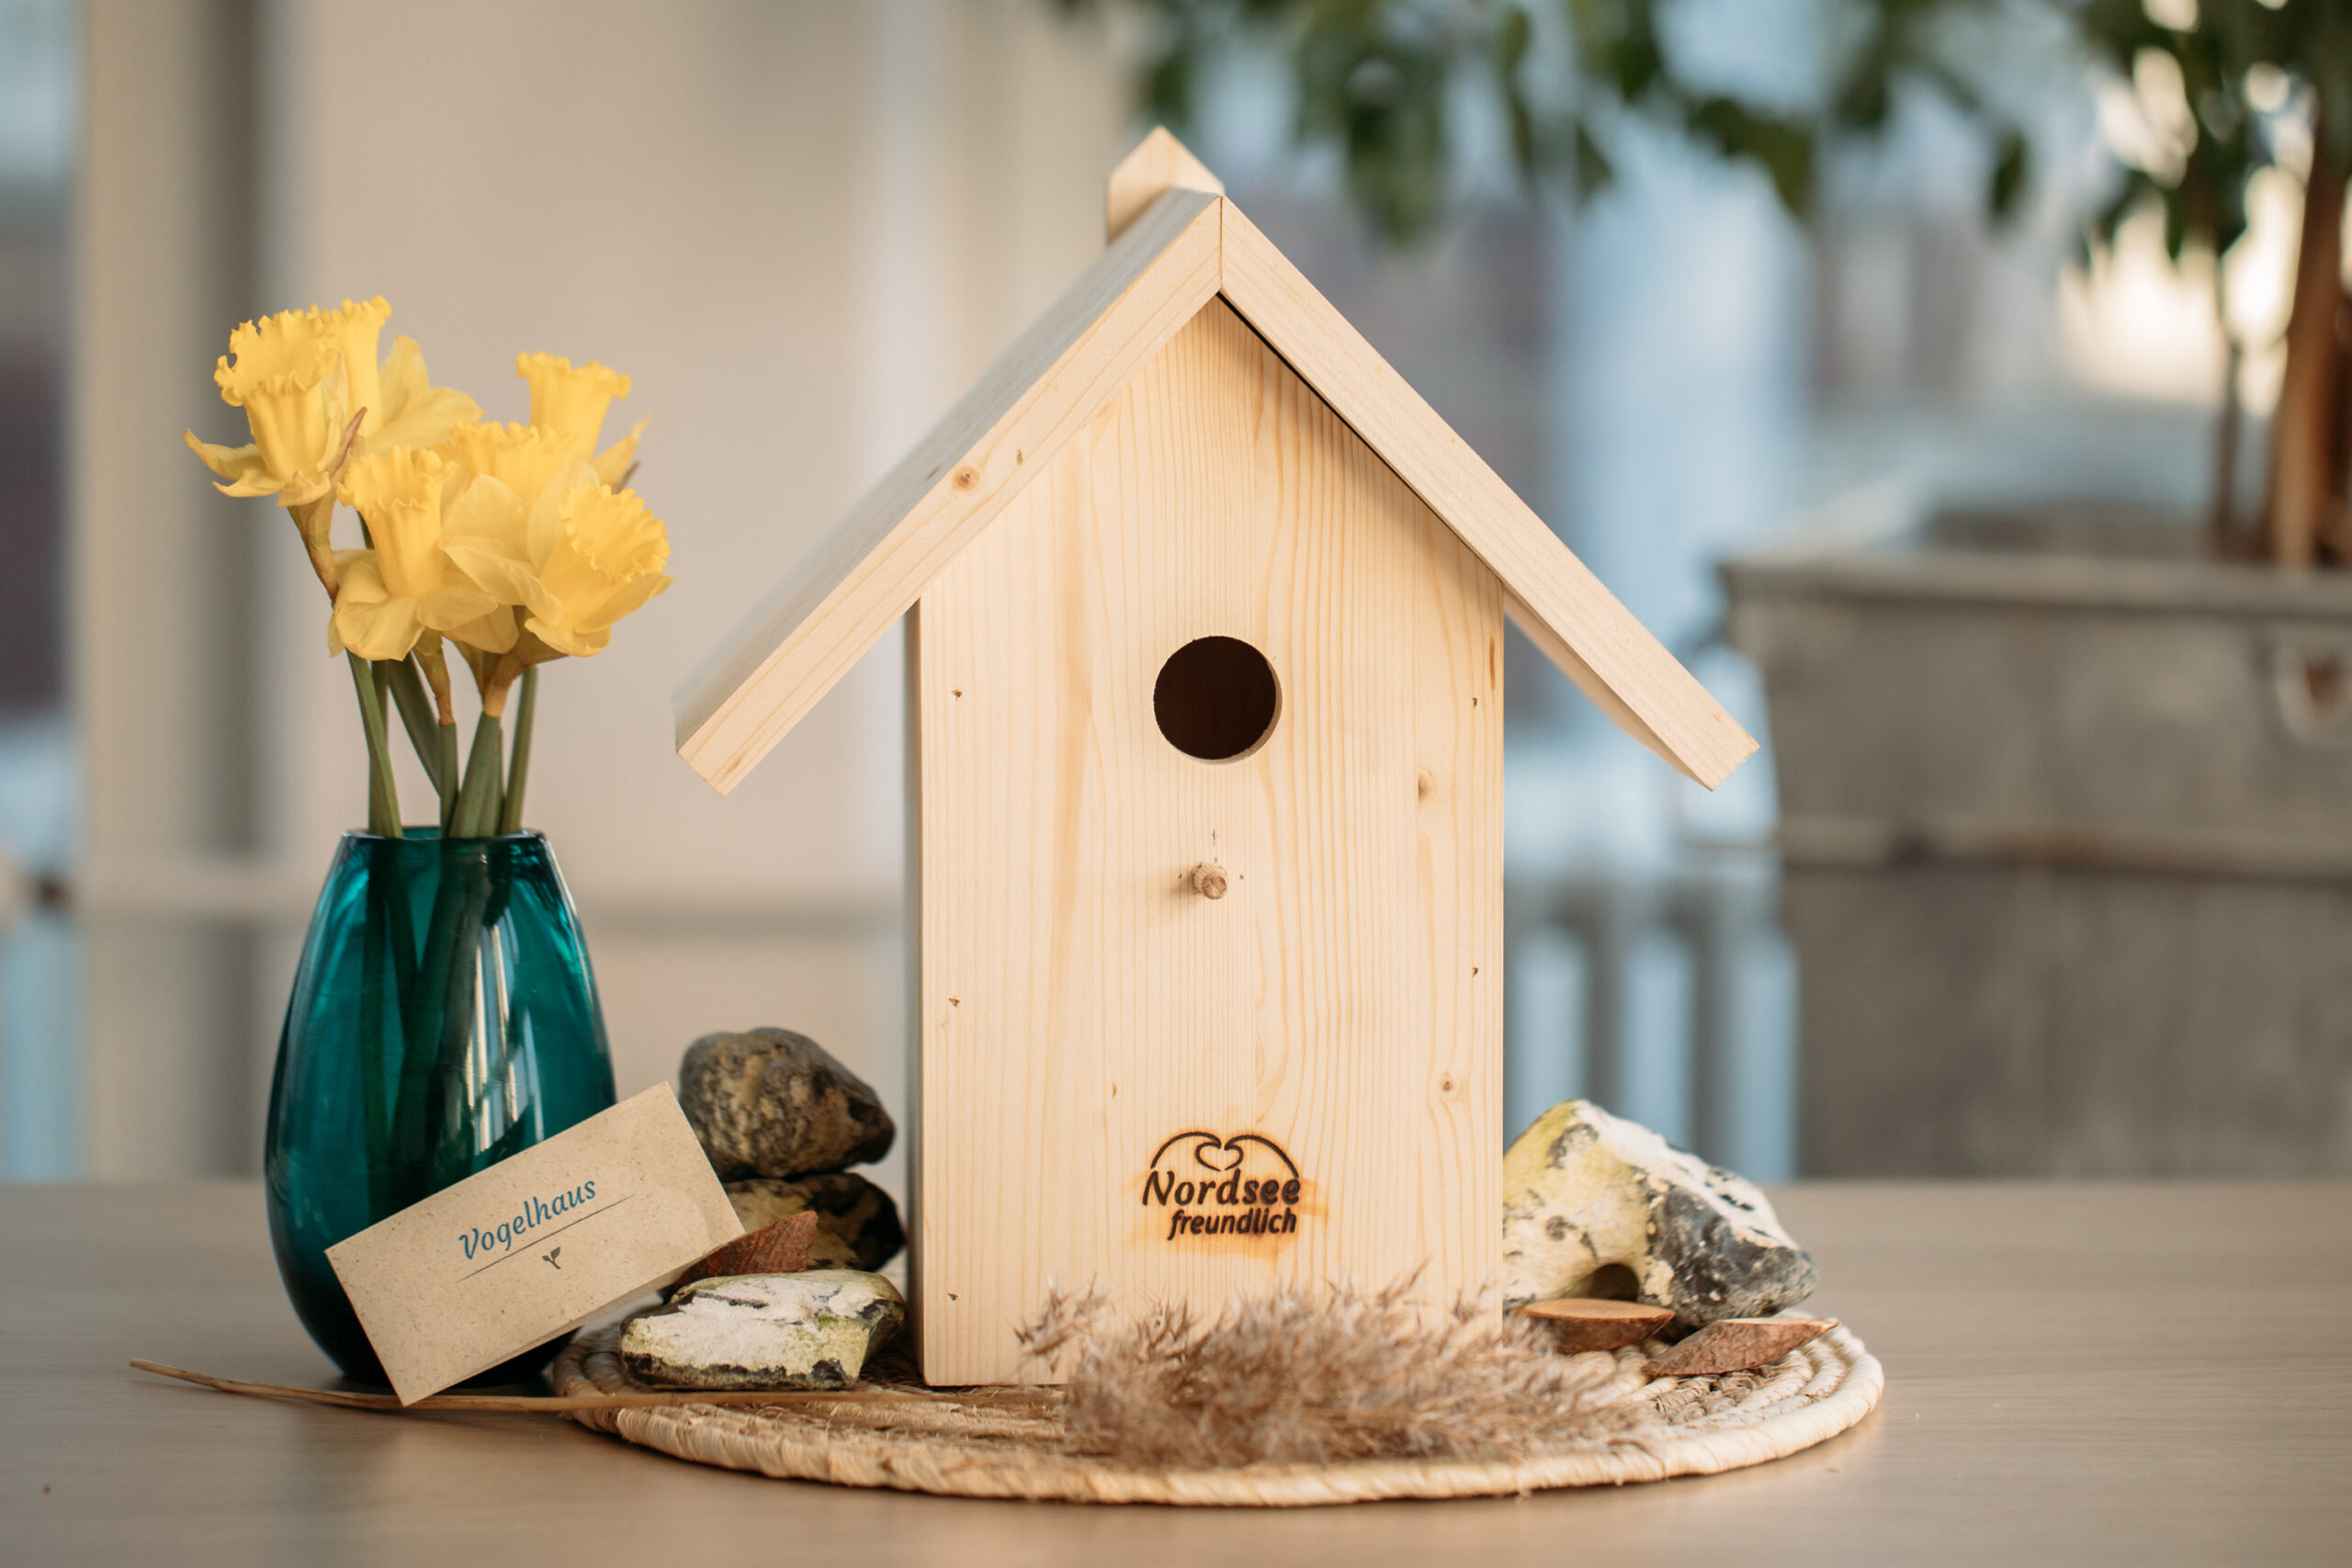 Ein selbst gebautes Vogelhäuschen mit kleinen Steinen, eine Pflanze und eine gelbe Blume in einer blauen Vase. Auf dem Vogelhäuschen ist das Logo "Nordseefreundlich" und eine Karte "Vogelhaus" abgebildet.